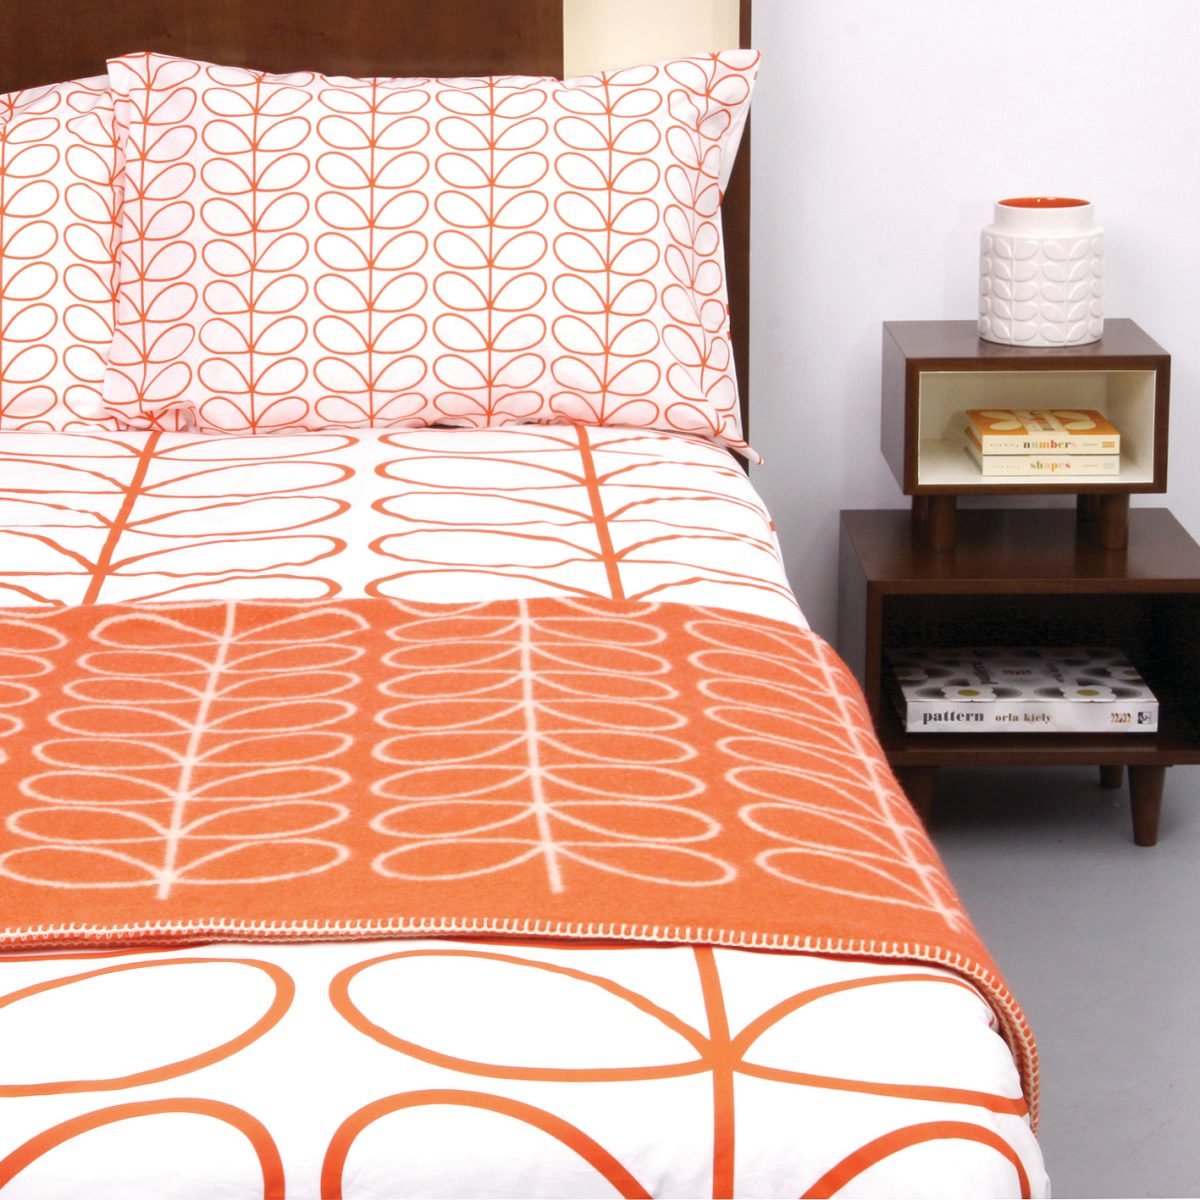 style rétro linge de lit orange blanc - blog déco - clem around the corner